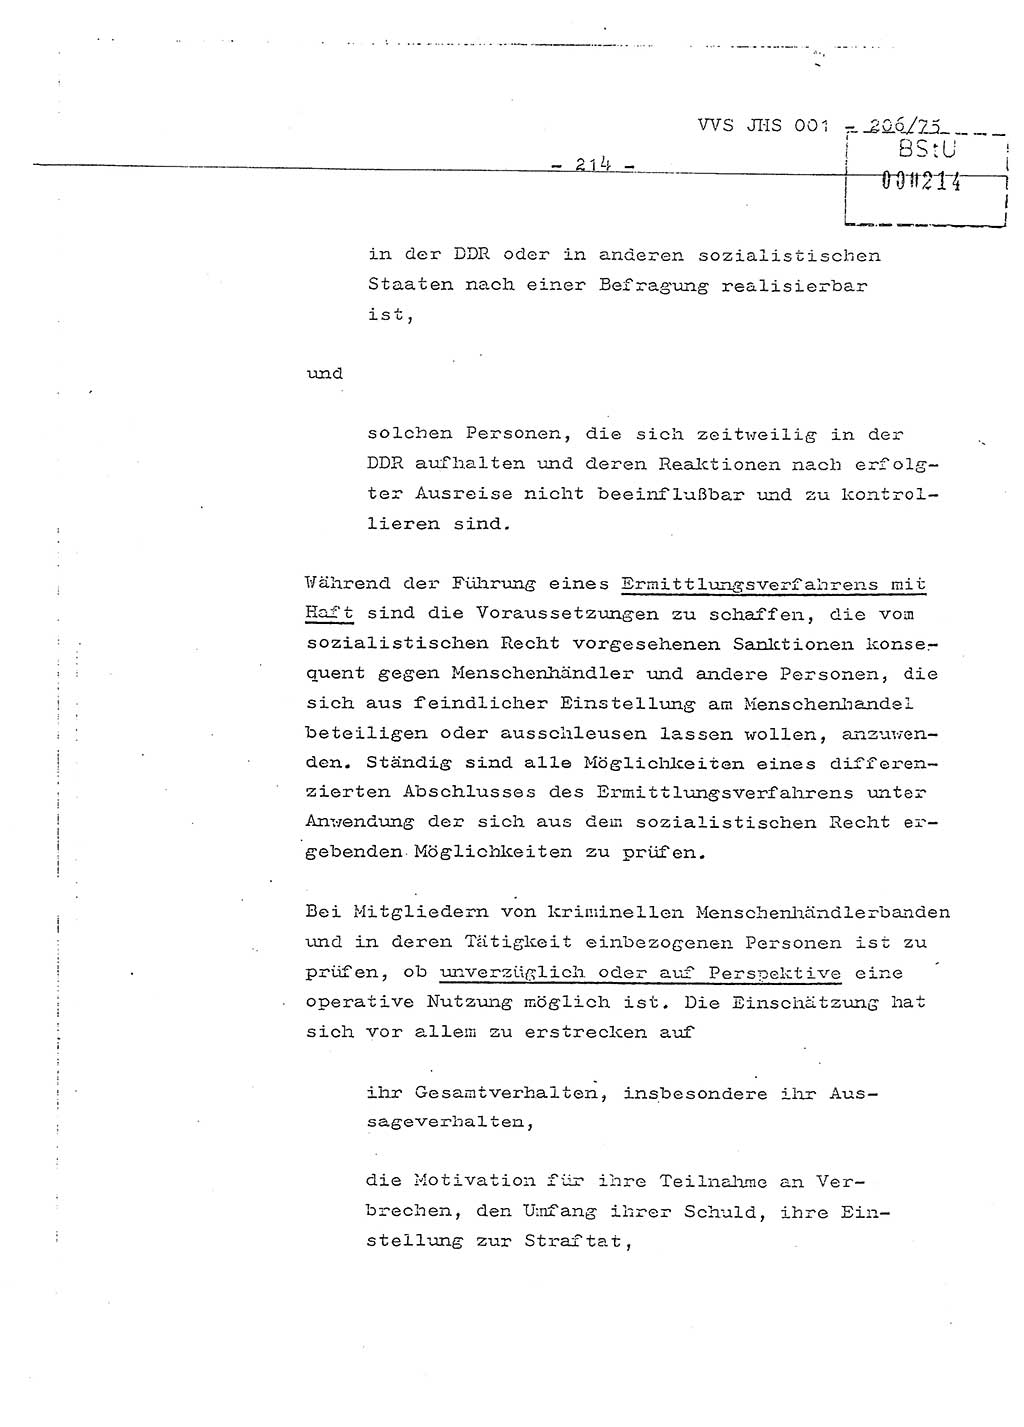 Dissertation Generalmajor Manfred Hummitzsch (Leiter der BV Leipzig), Generalmajor Heinz Fiedler (HA Ⅵ), Oberst Rolf Fister (HA Ⅸ), Ministerium für Staatssicherheit (MfS) [Deutsche Demokratische Republik (DDR)], Juristische Hochschule (JHS), Vertrauliche Verschlußsache (VVS) 001-206/75, Potsdam 1975, Seite 214 (Diss. MfS DDR JHS VVS 001-206/75 1975, S. 214)